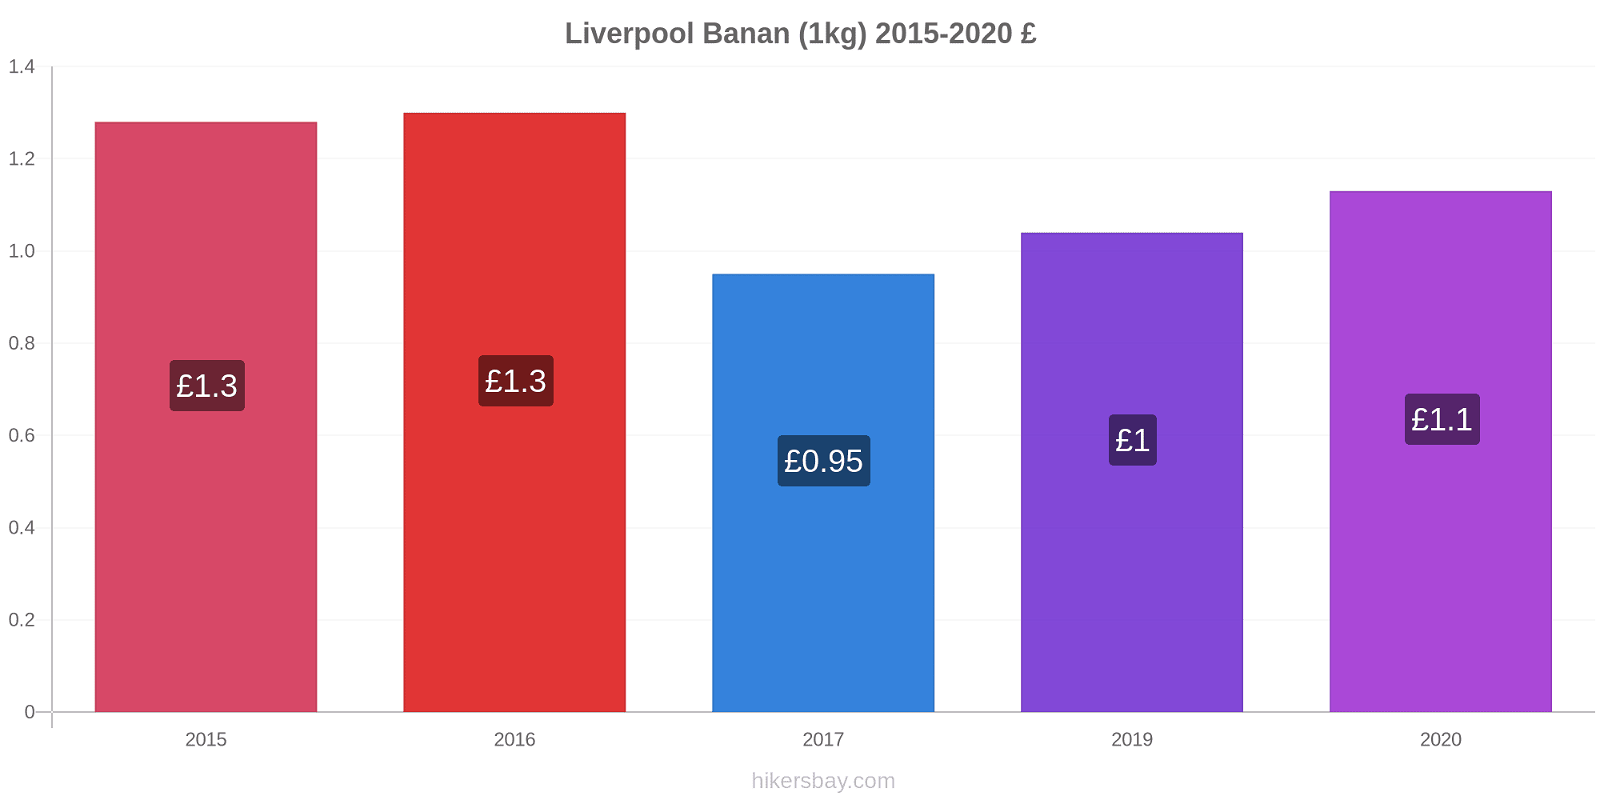 Liverpool prisændringer Banan (1kg) hikersbay.com